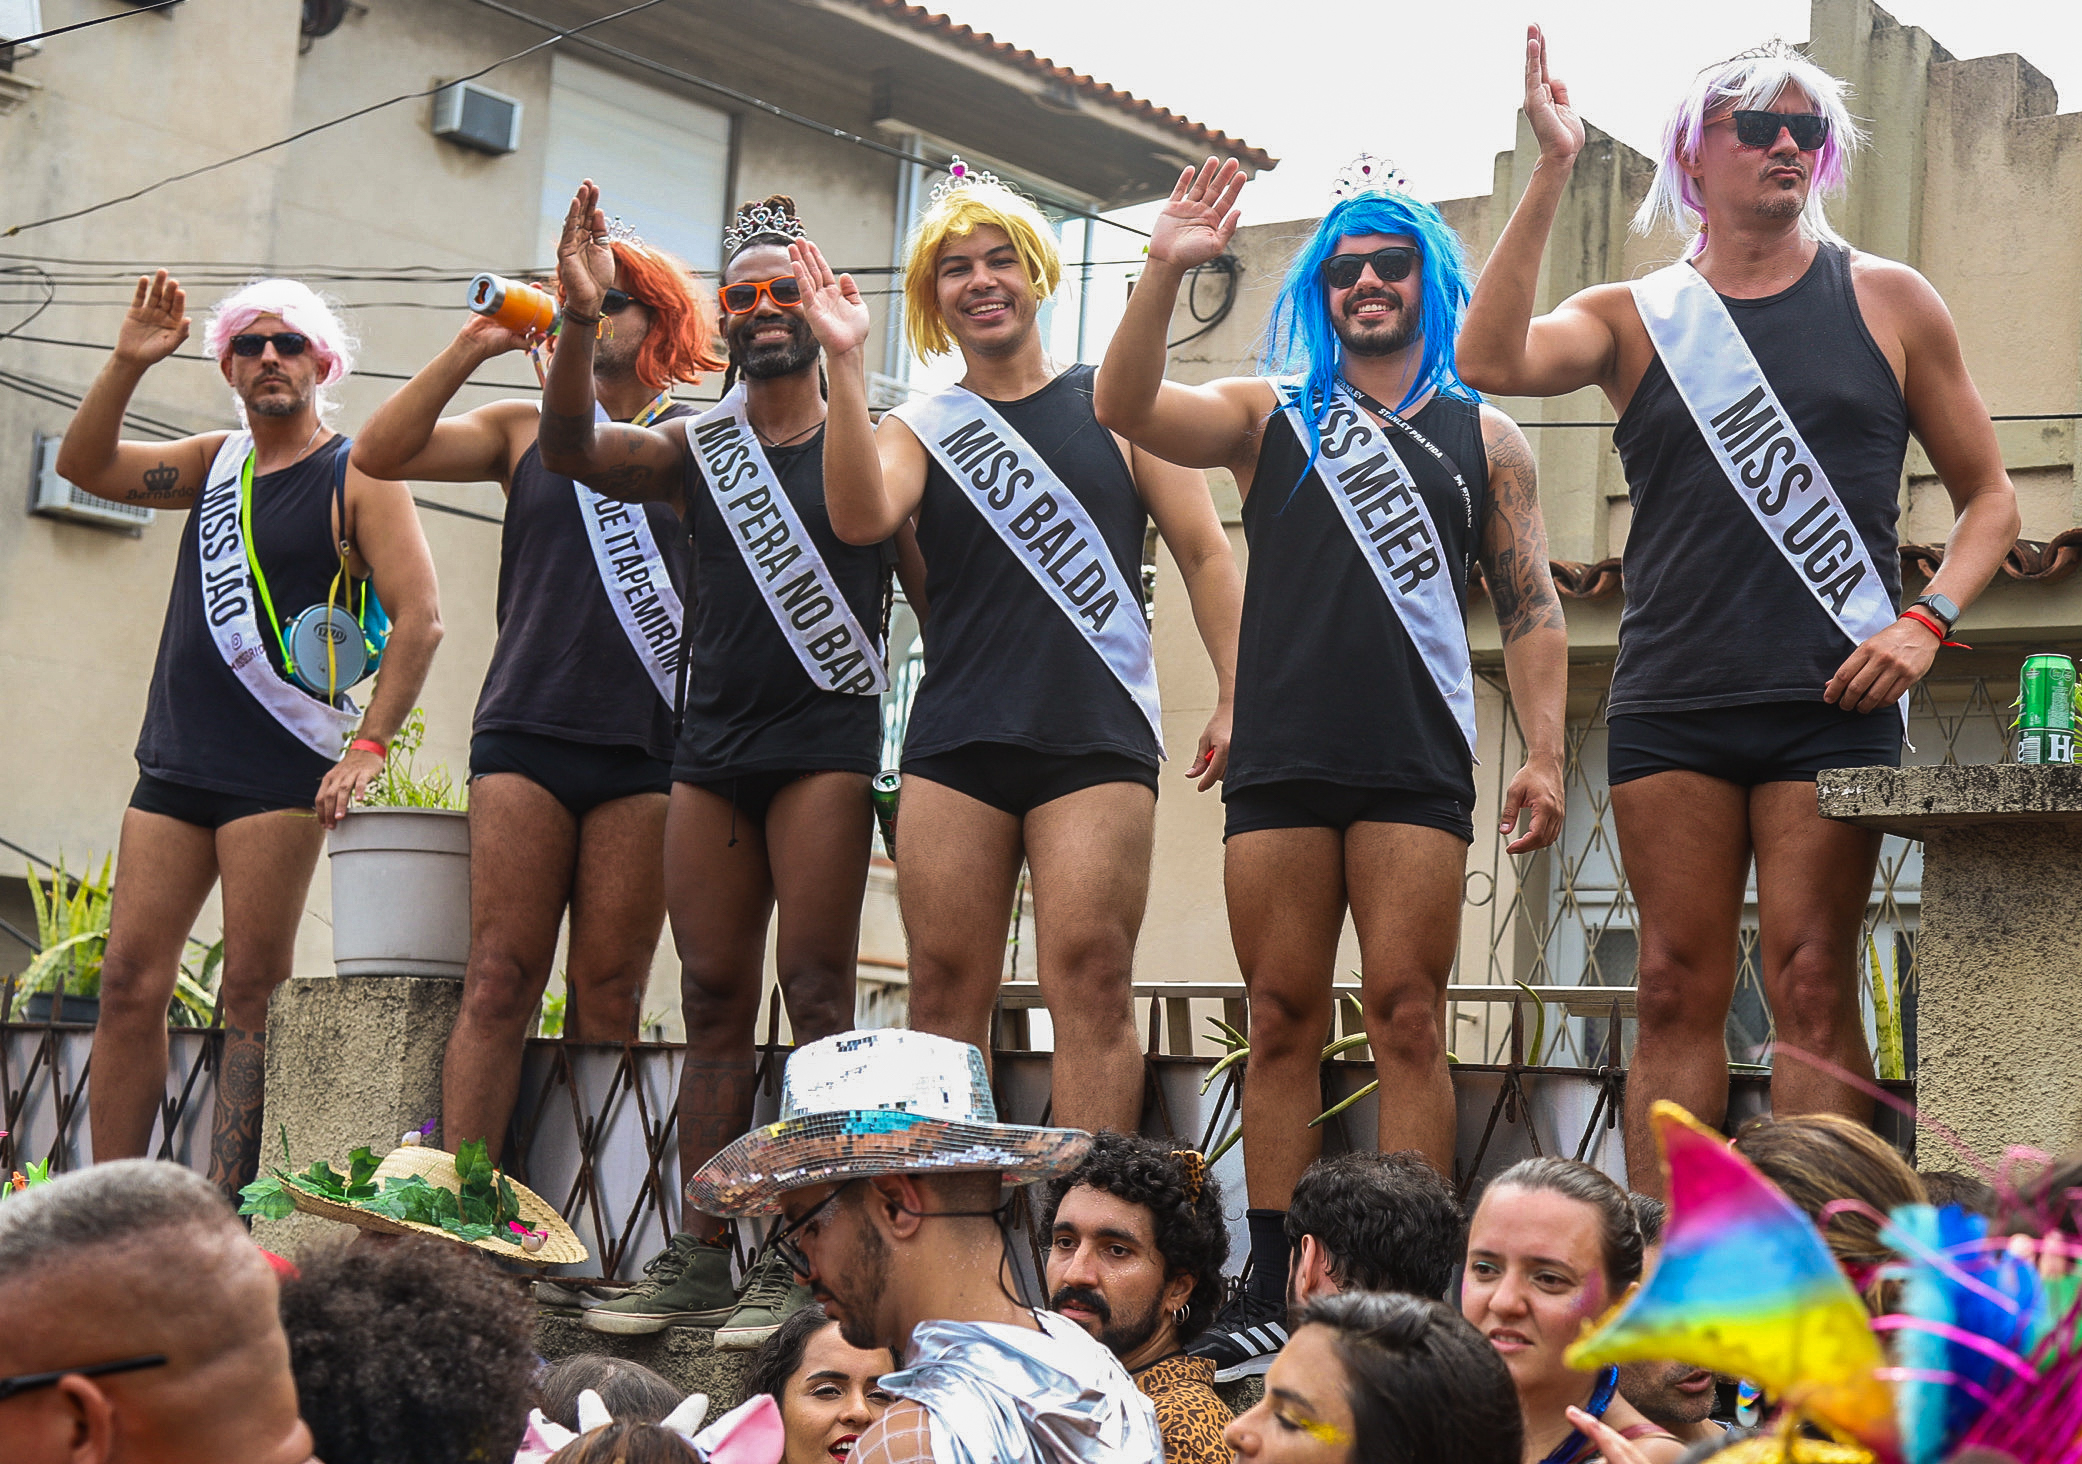 Com fantasias criativas, grupo desfila com roupa de miss no Céu Na Terra - Foto: Fernando Maia - Riotur